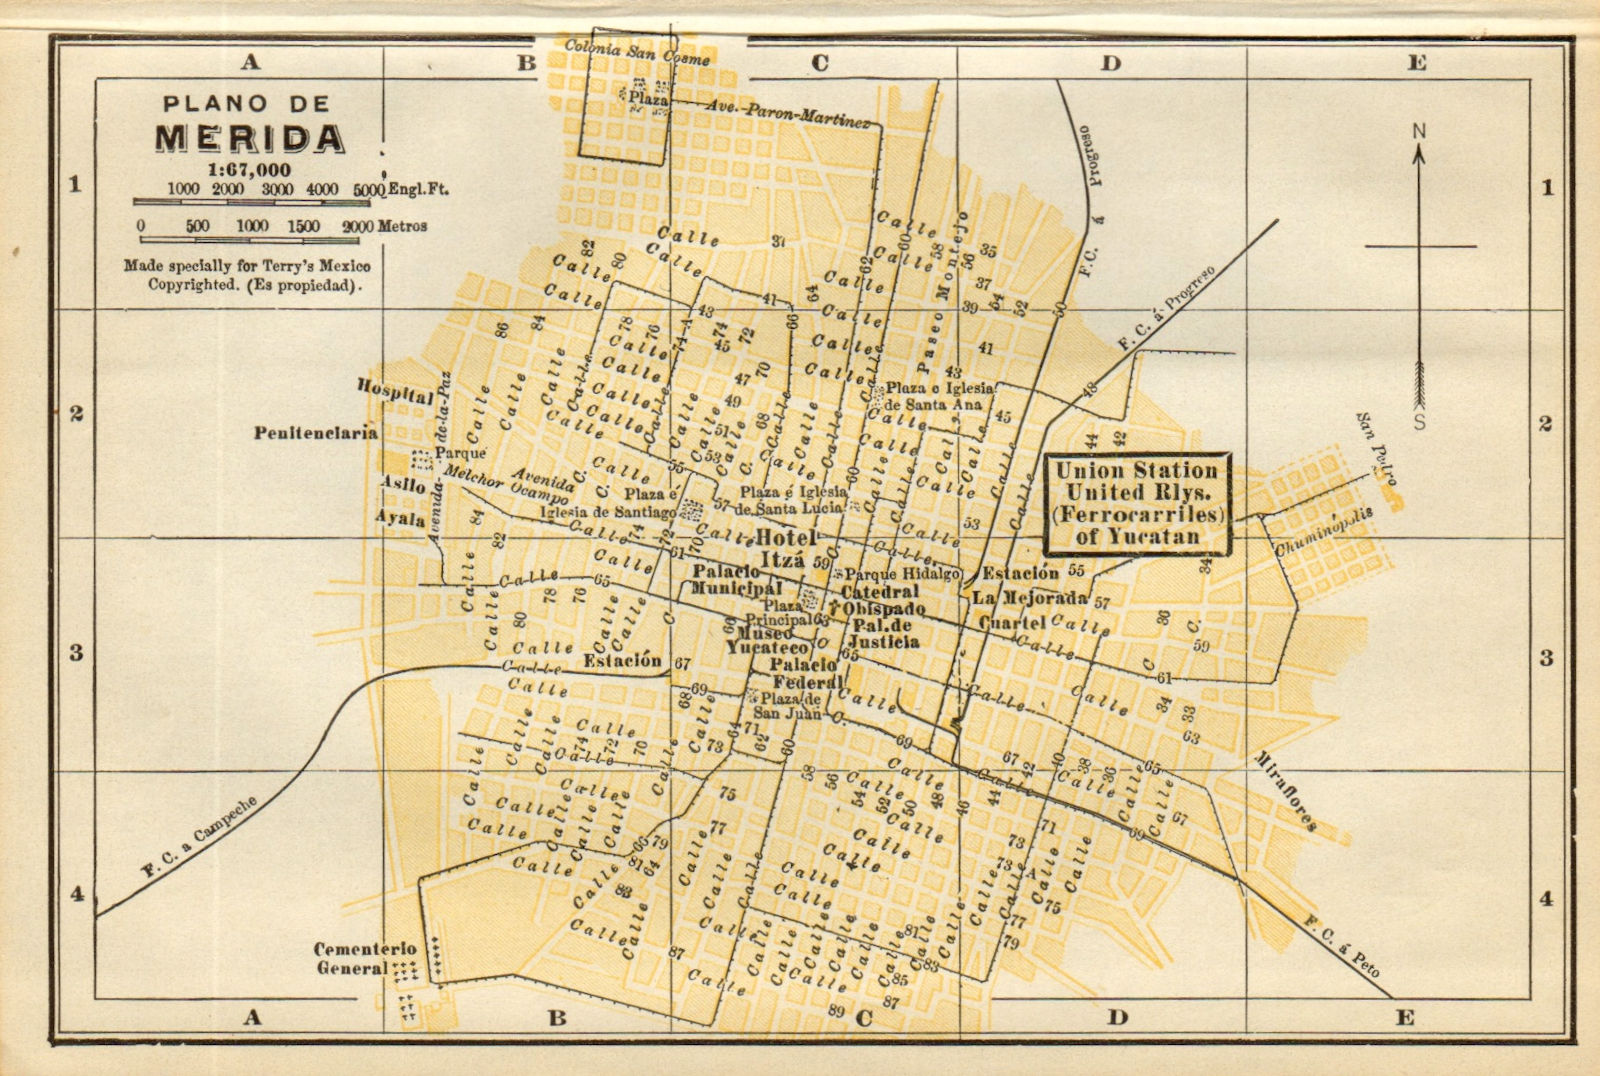 Plano de MERIDA, Mexico. Mapa de la ciudad. City/town plan 1935 old